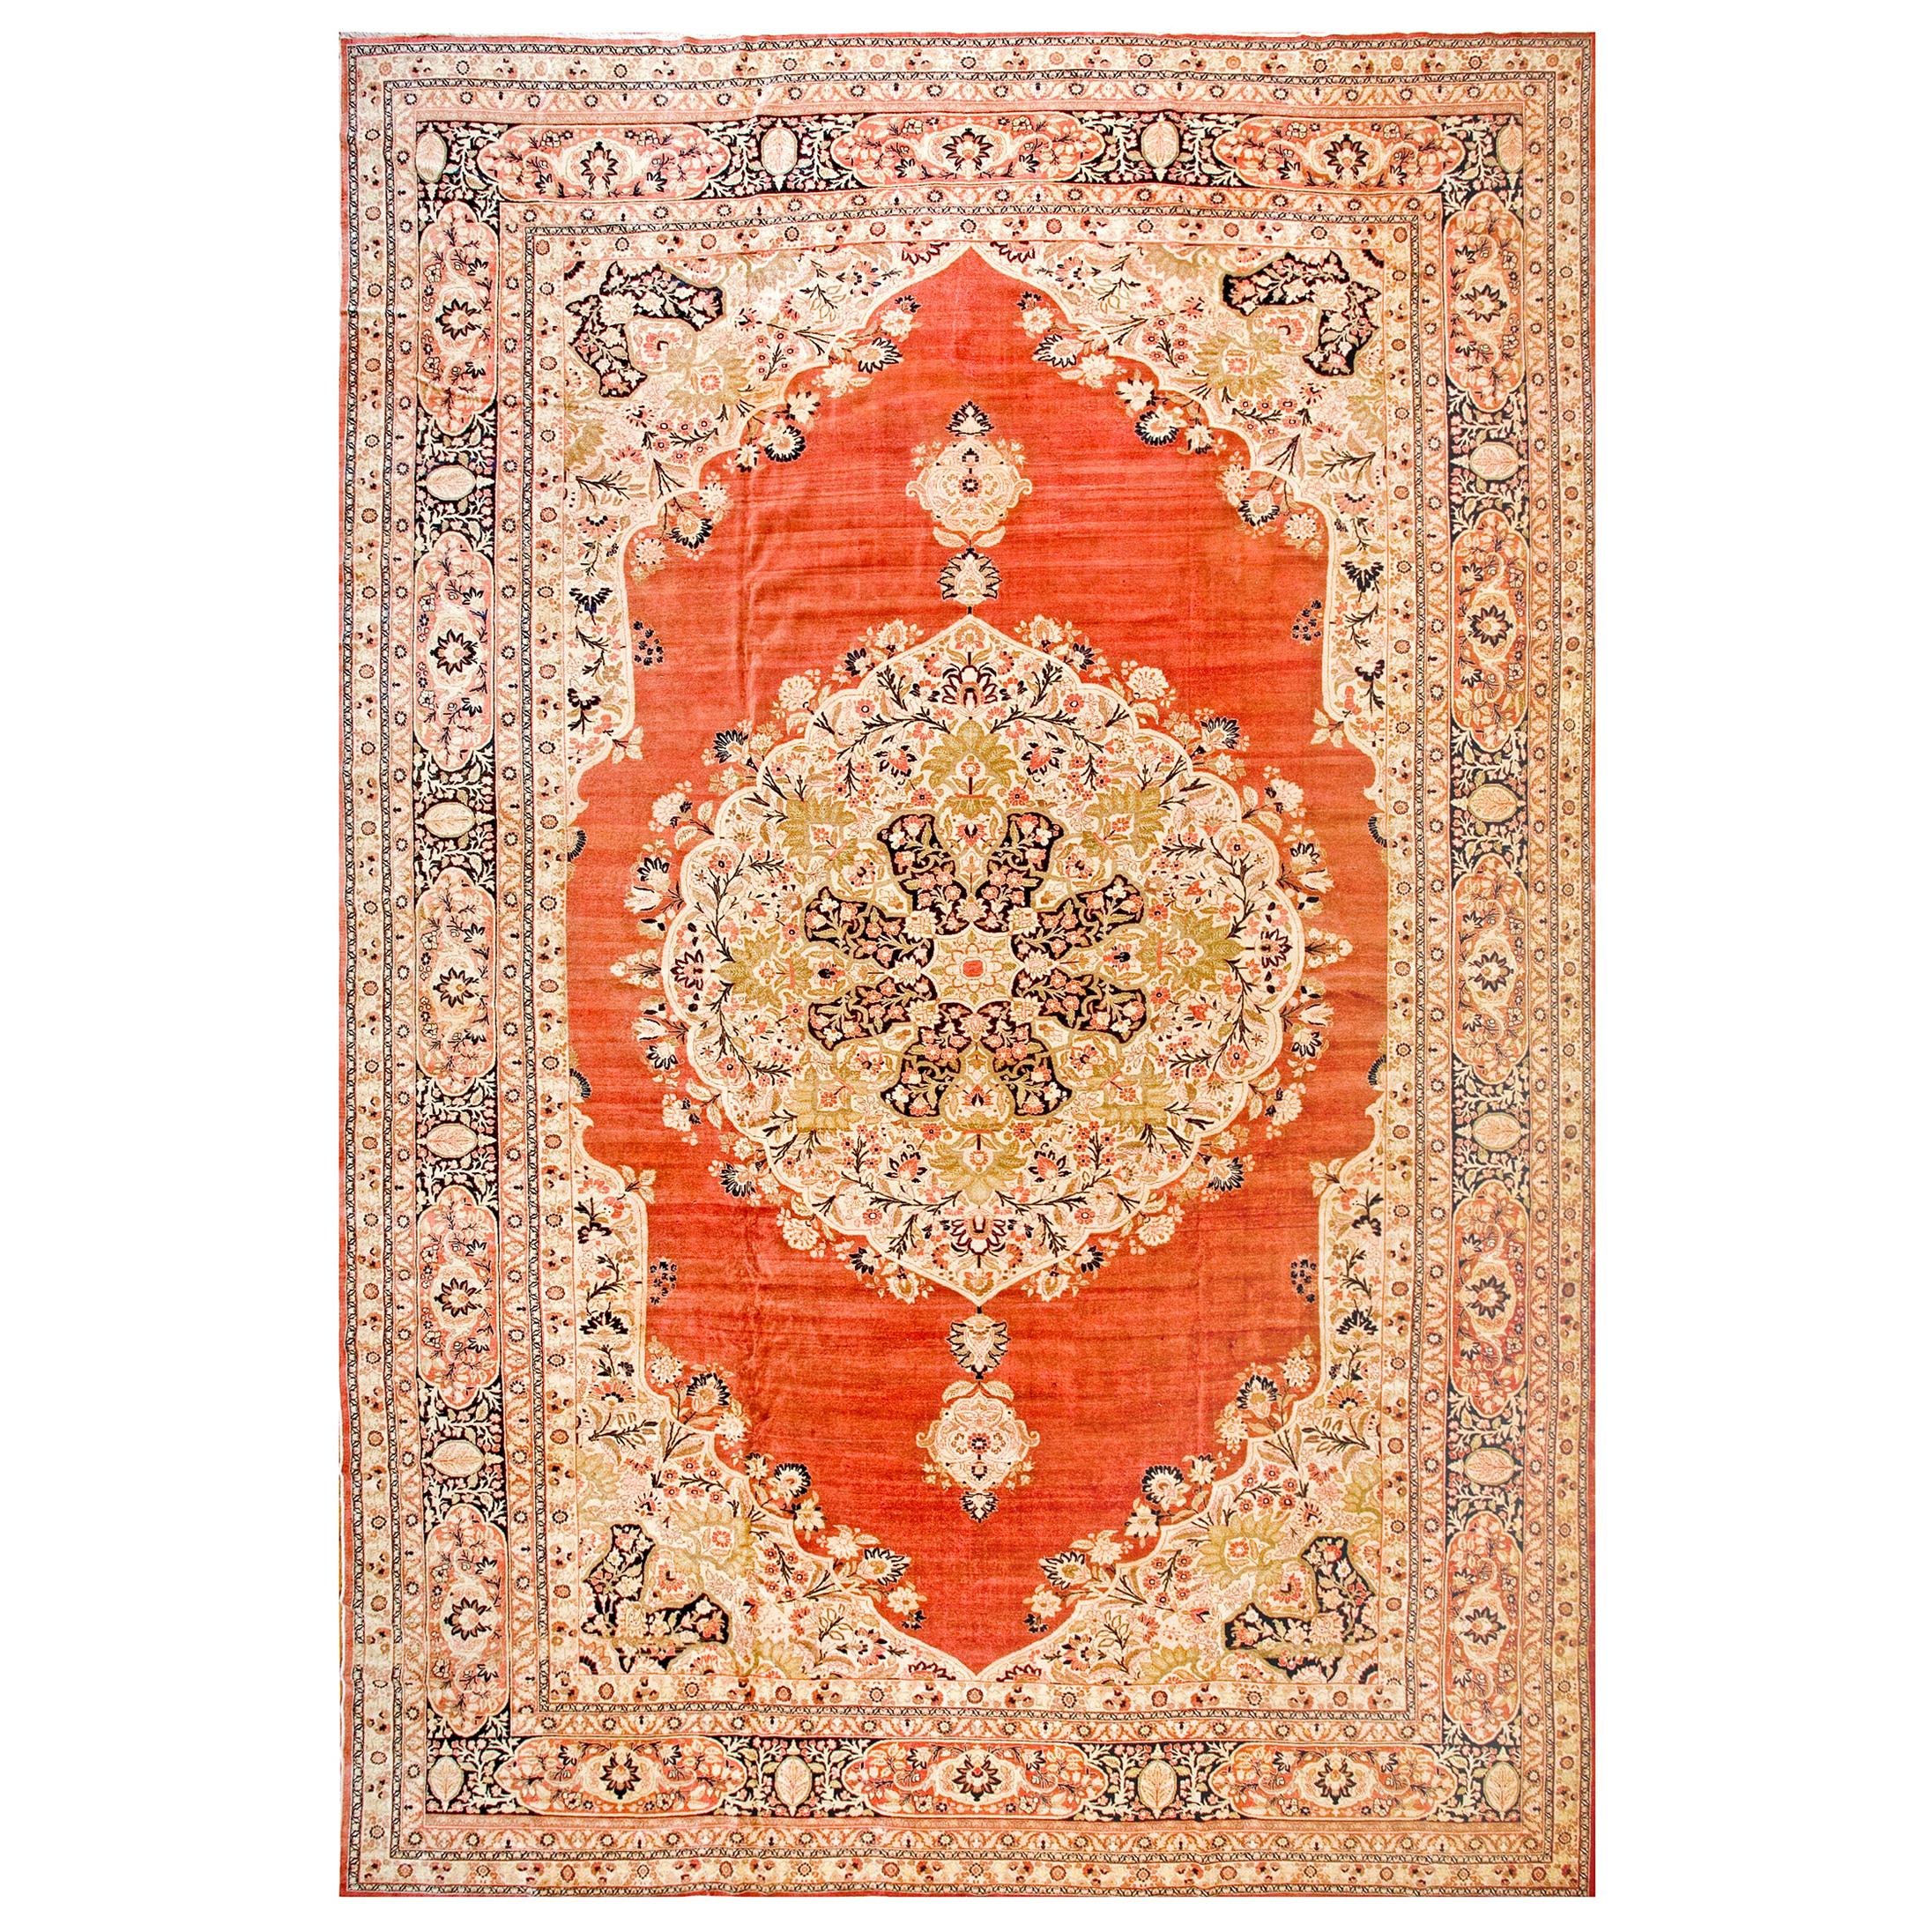 Persischer Haji Jalili-Tabriz-Teppich aus dem 19. Jahrhundert ( 13'7" x 20'2" - 414 x 615")